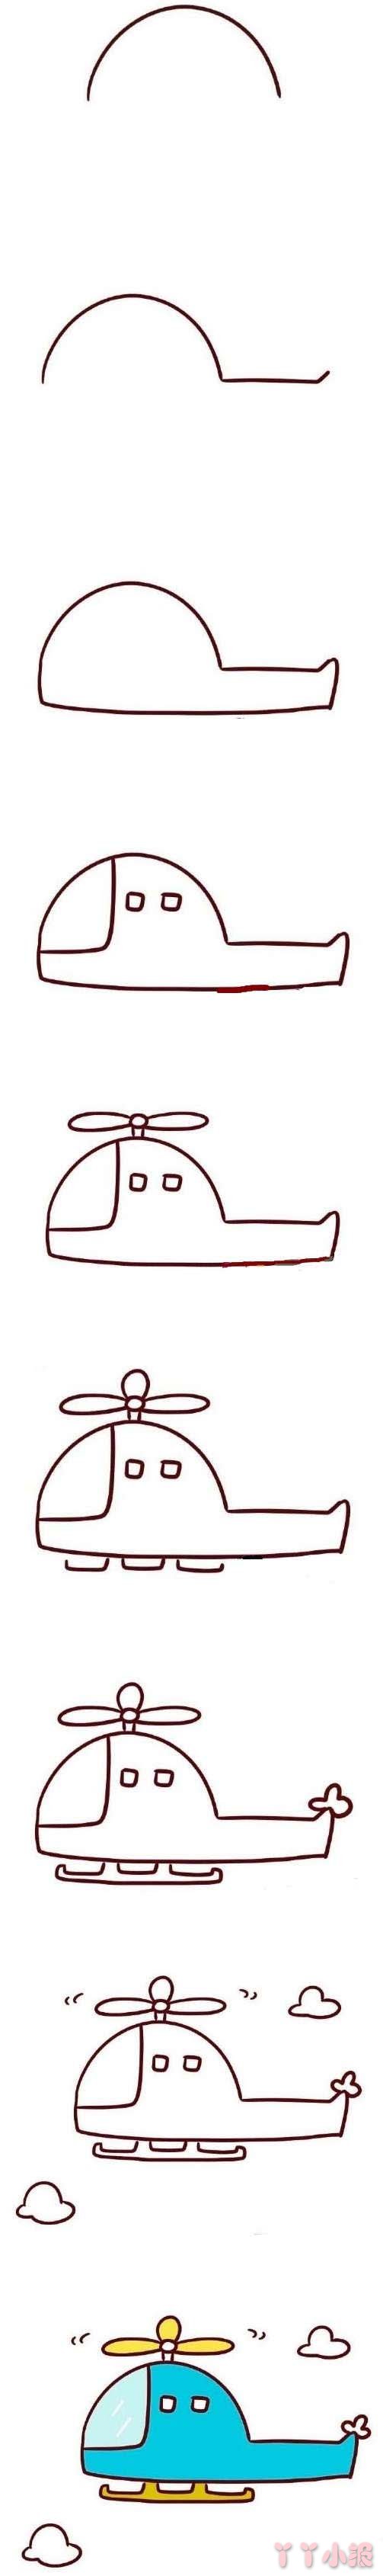 幼儿园彩色直升机的画法步骤教程简单